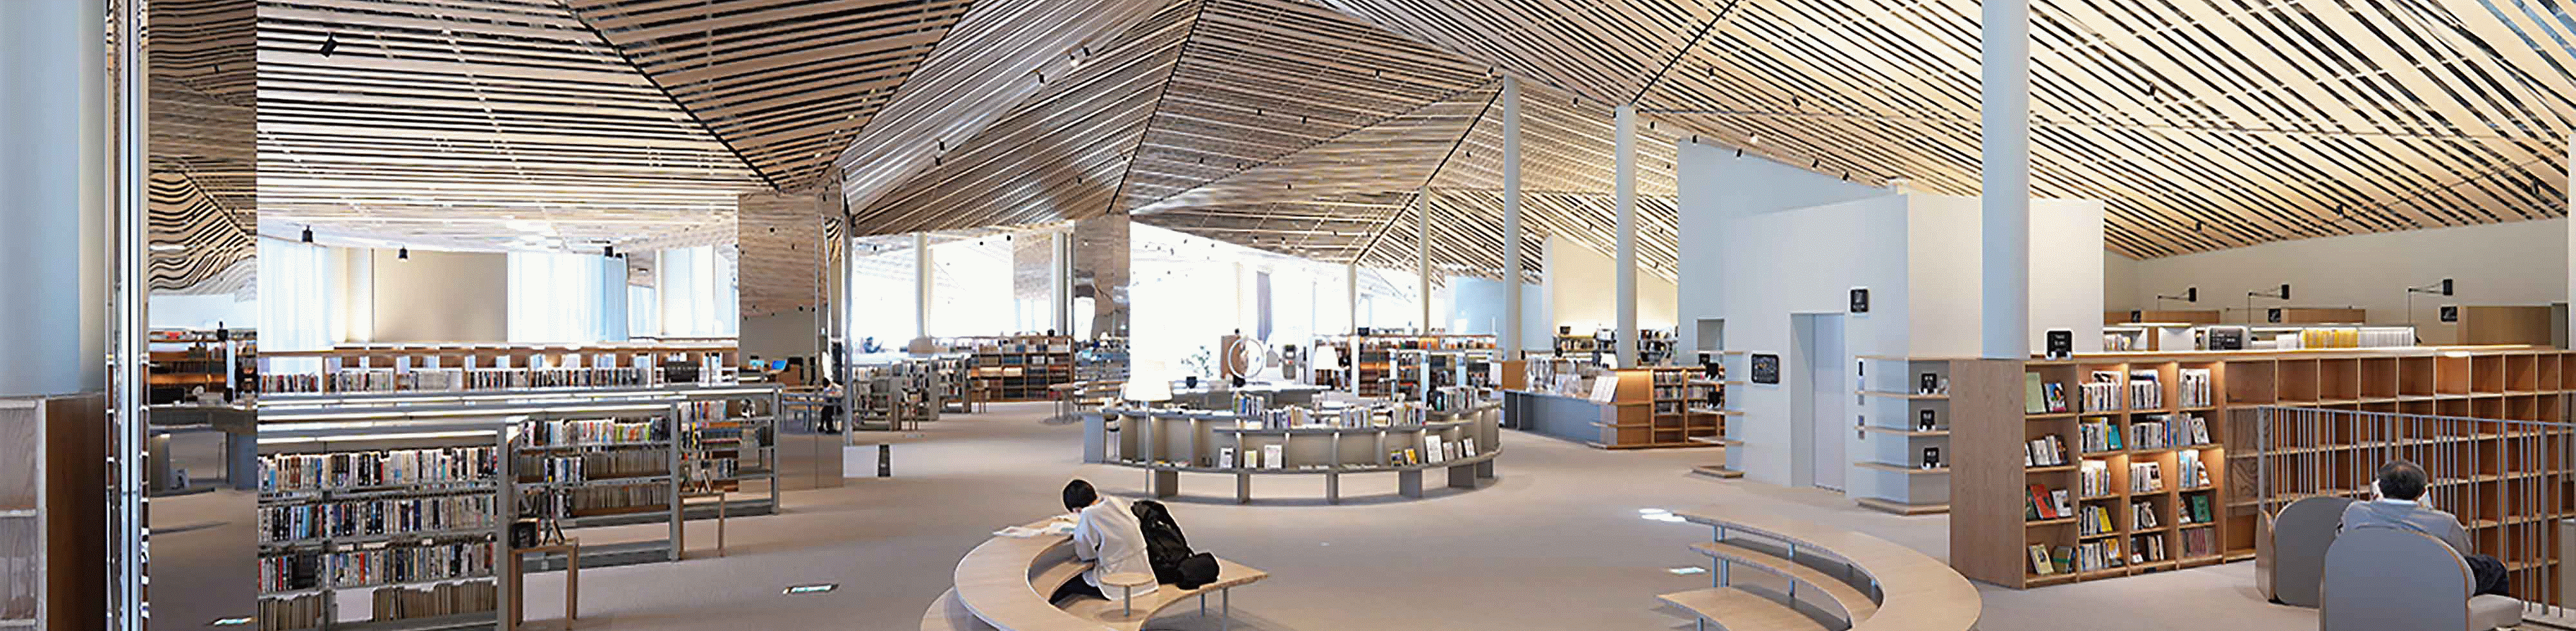 Imagem de espaço interior de uma grande biblioteca de design elaborado, com traves de madeira no teto, com alta resolução de canto a canto do ecrã